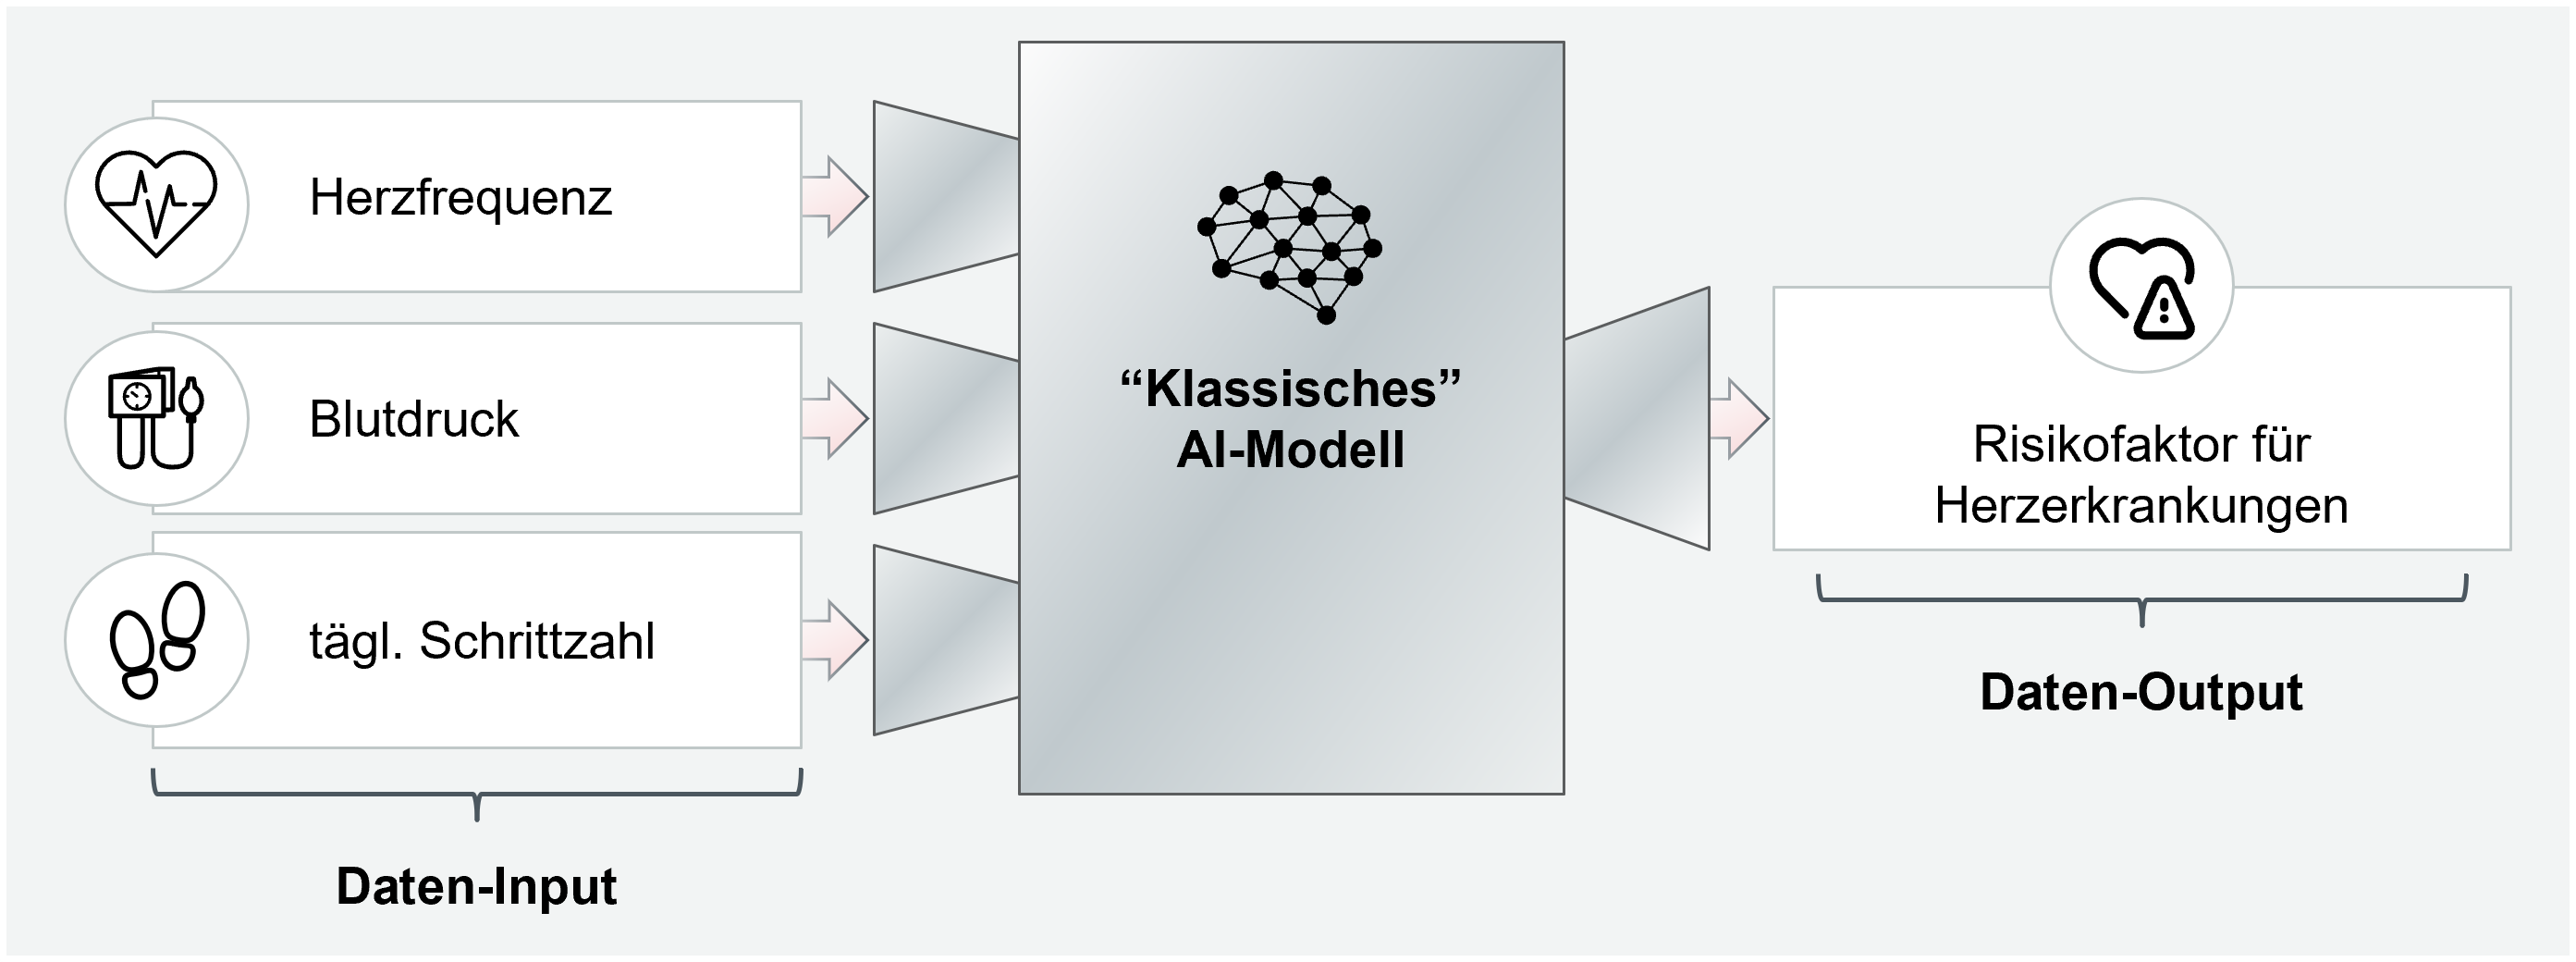 Beispiel für ein klassisches, nicht generatives KI-Model, welches über Machine-Learning (siehe unten: „1.1. Marktdynamik nimmt zu“ realisiert werden kann